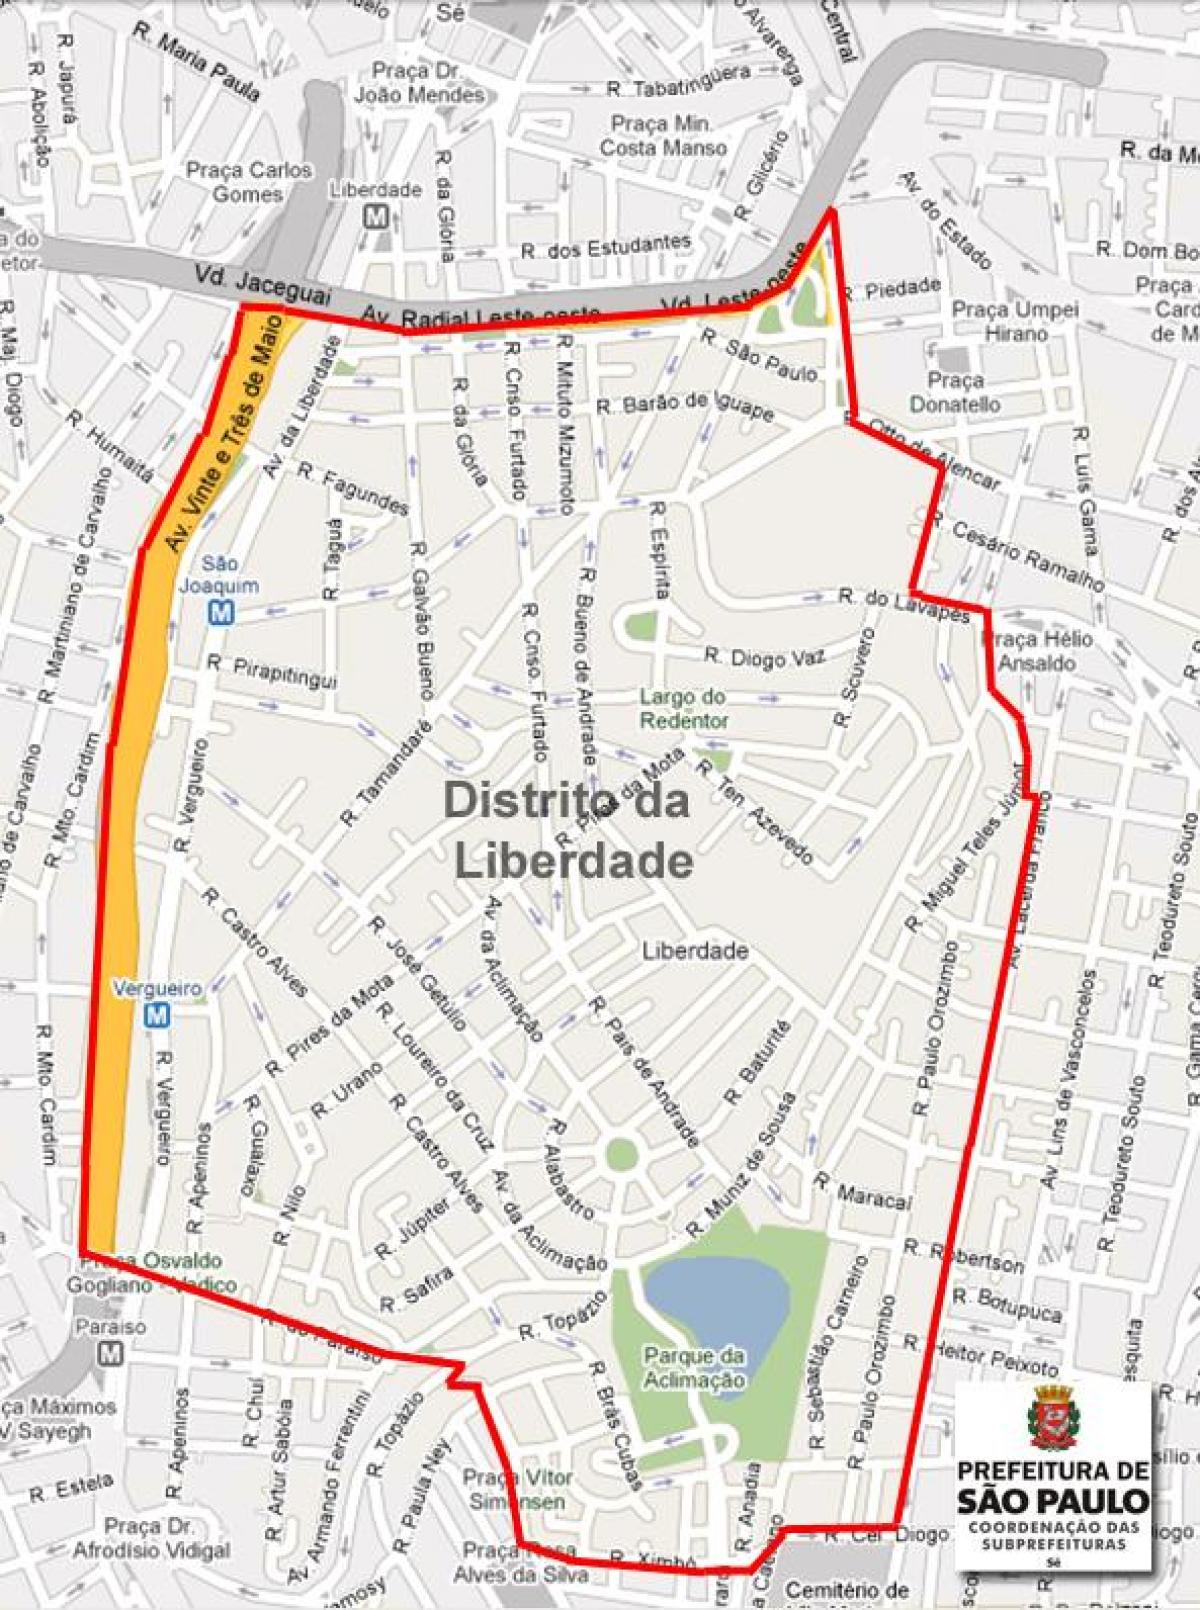 แผนที่ของ Liberdade São Paulo